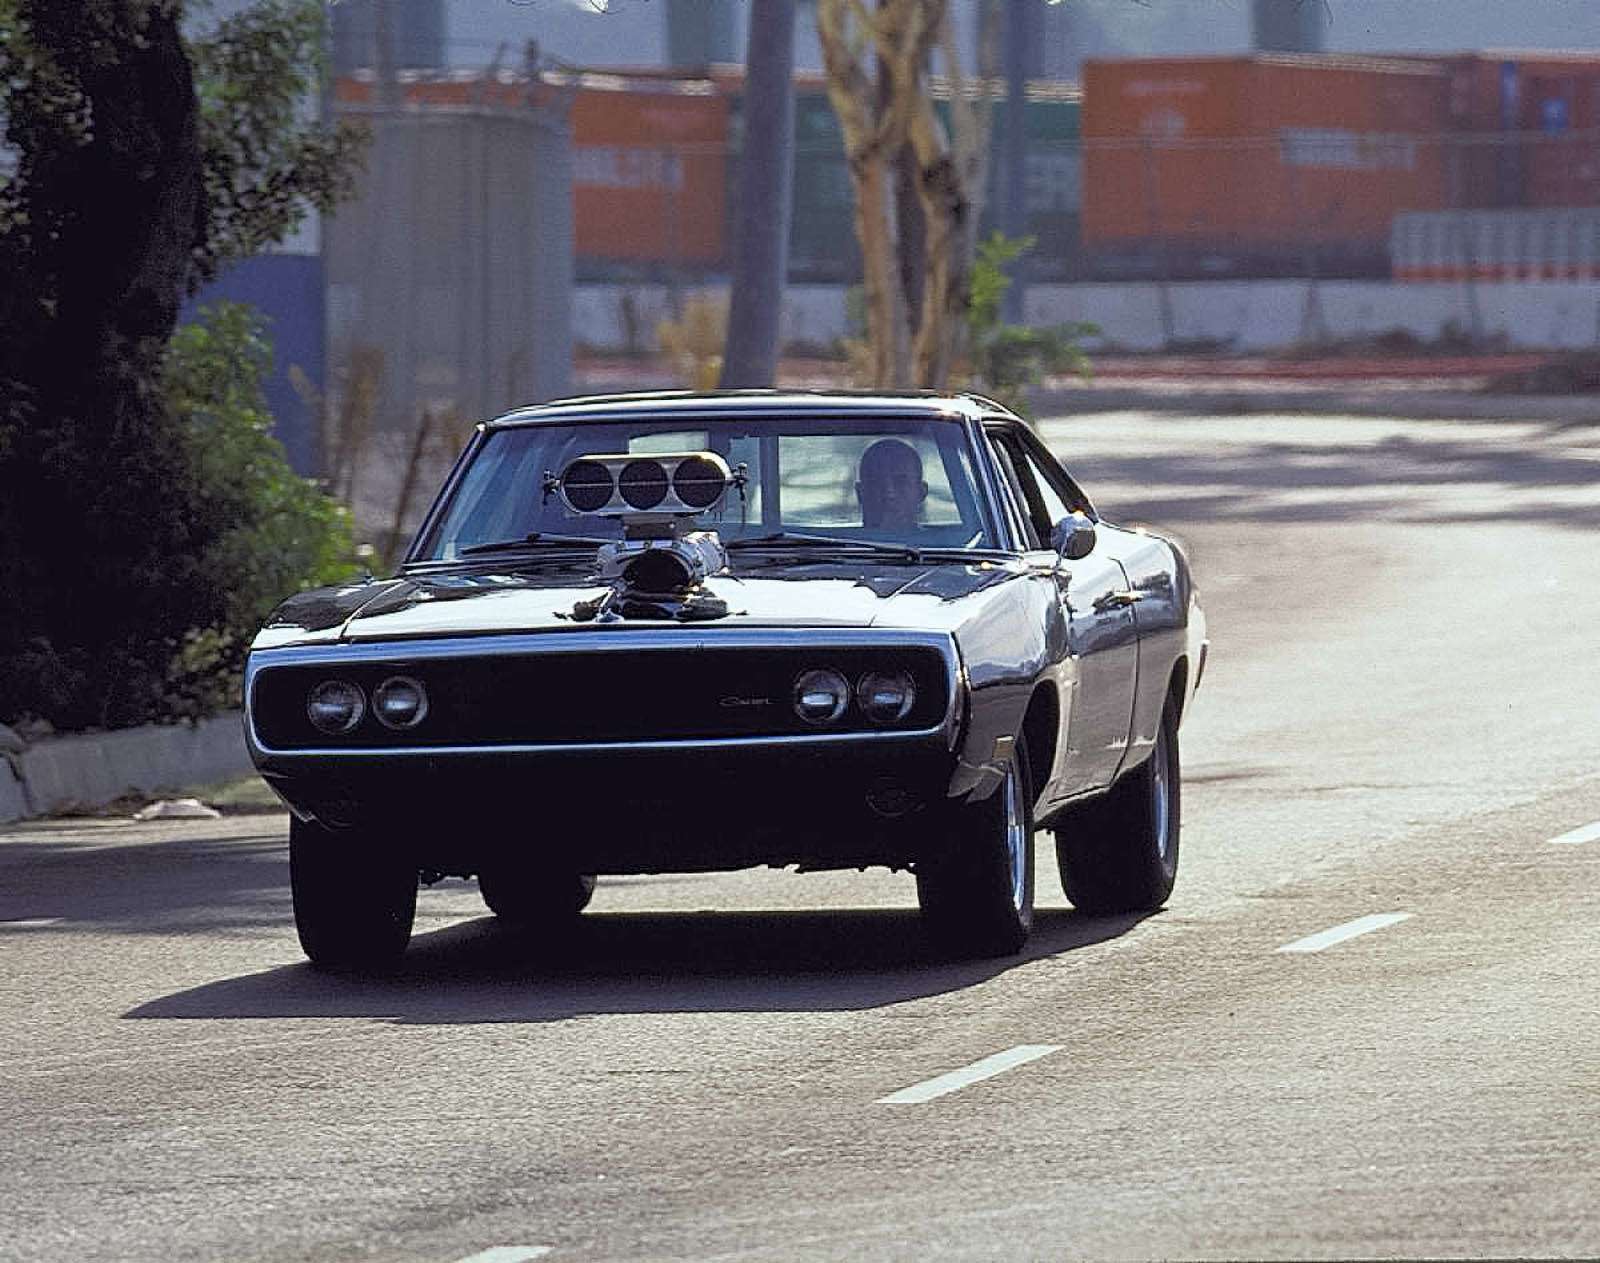 Dodge Charger – «Форсаж». В франшизе «Форсаж» от изобилия автомобилей в глазах рябит. Но одна модель появлялась в нескольких частях и стала одной из визитных карточек киноэпопеи. Речь идет о черном Dodge Charger 1970 года с двигателем, мощность которого, если верить герою Вина Дизеля Доминику Торетто, достигает 900 л.с. При резком старте передняя ось автомобиля отрывалась от асфальта. В конце первого фильма Додж попал в ДТП и был сильно поврежден. Однако уже в четвертой части он появляется вновь. А затем и в пятой.